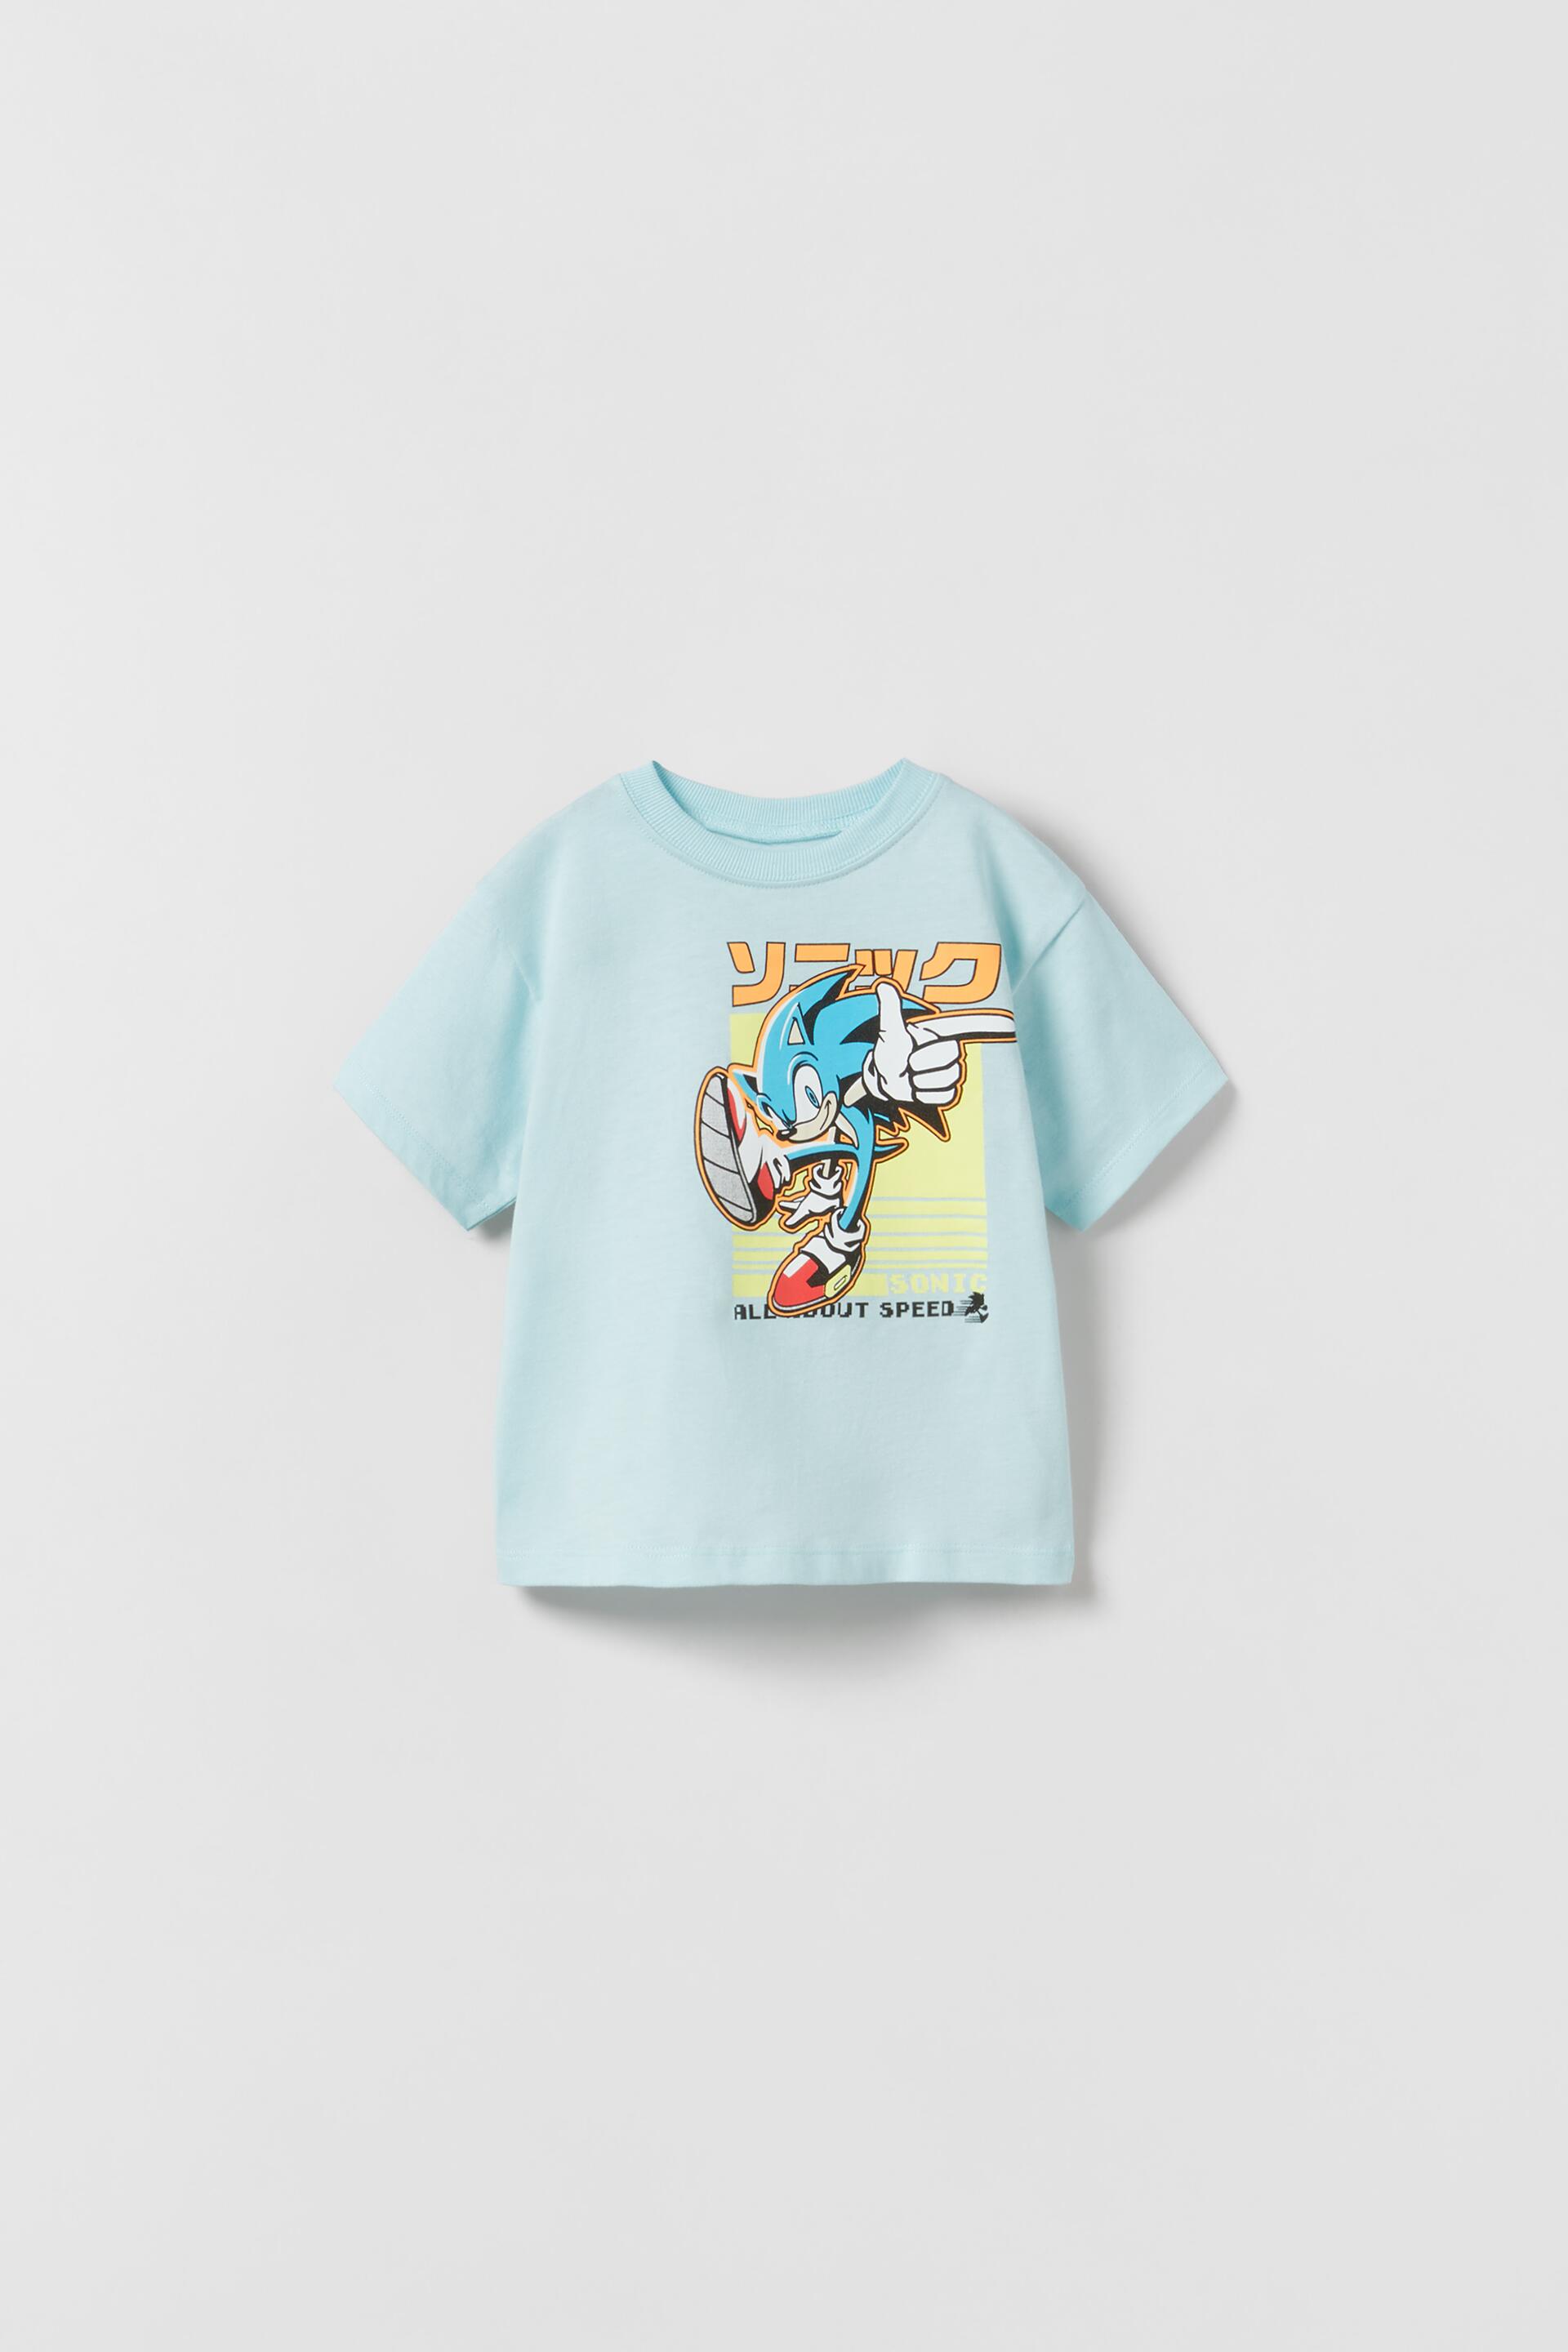 Zara Sonic ® Sega T-Shirt - Big Apple Buddy